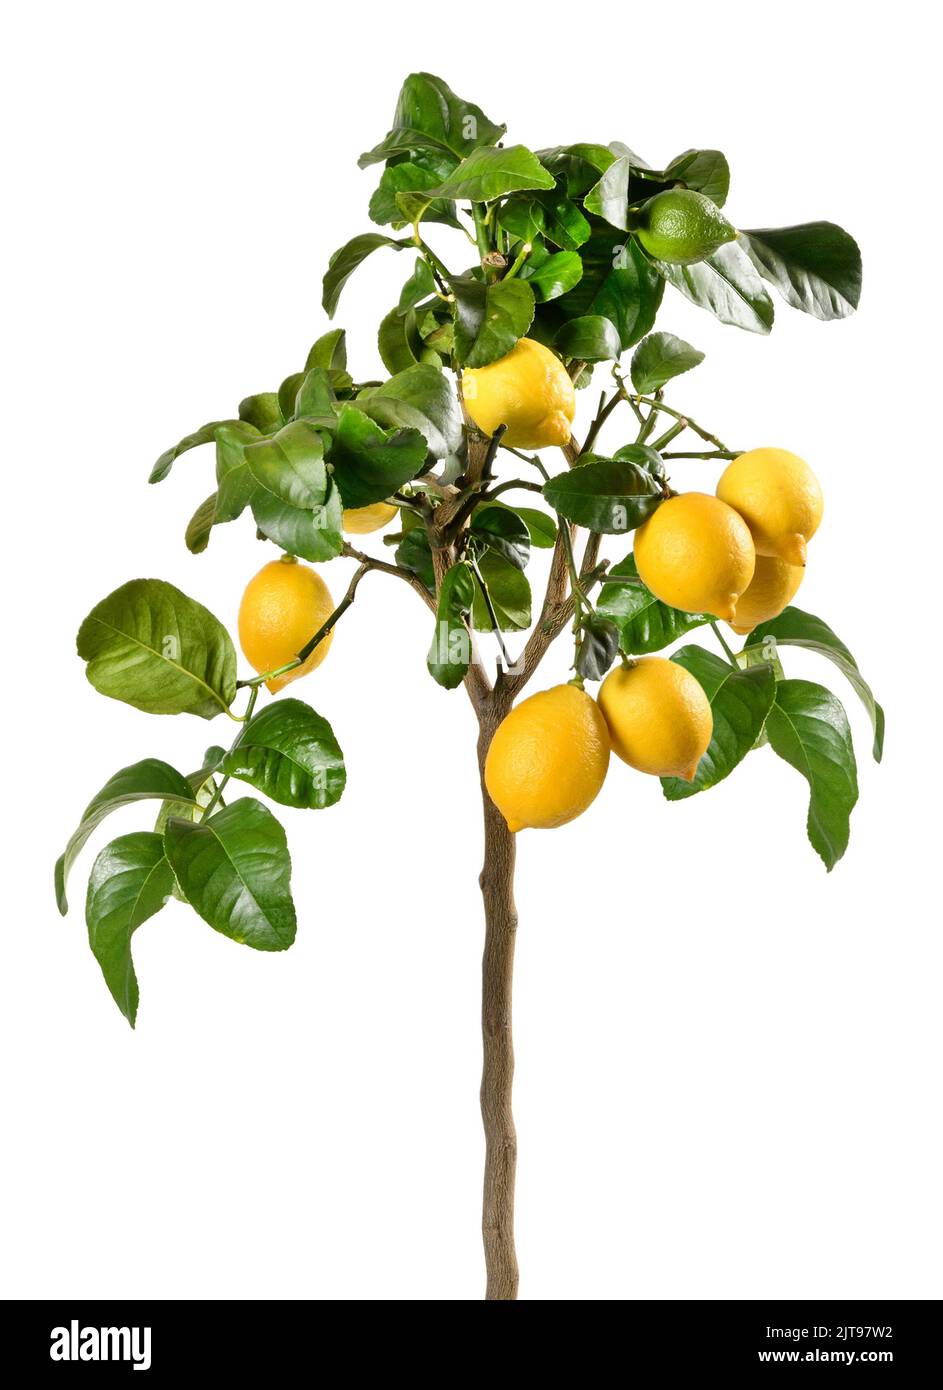 Kleiner Baum mit grünen Blättern und reifen gelben Zitronen, die vor weißem Hintergrund wachsen Stockfoto